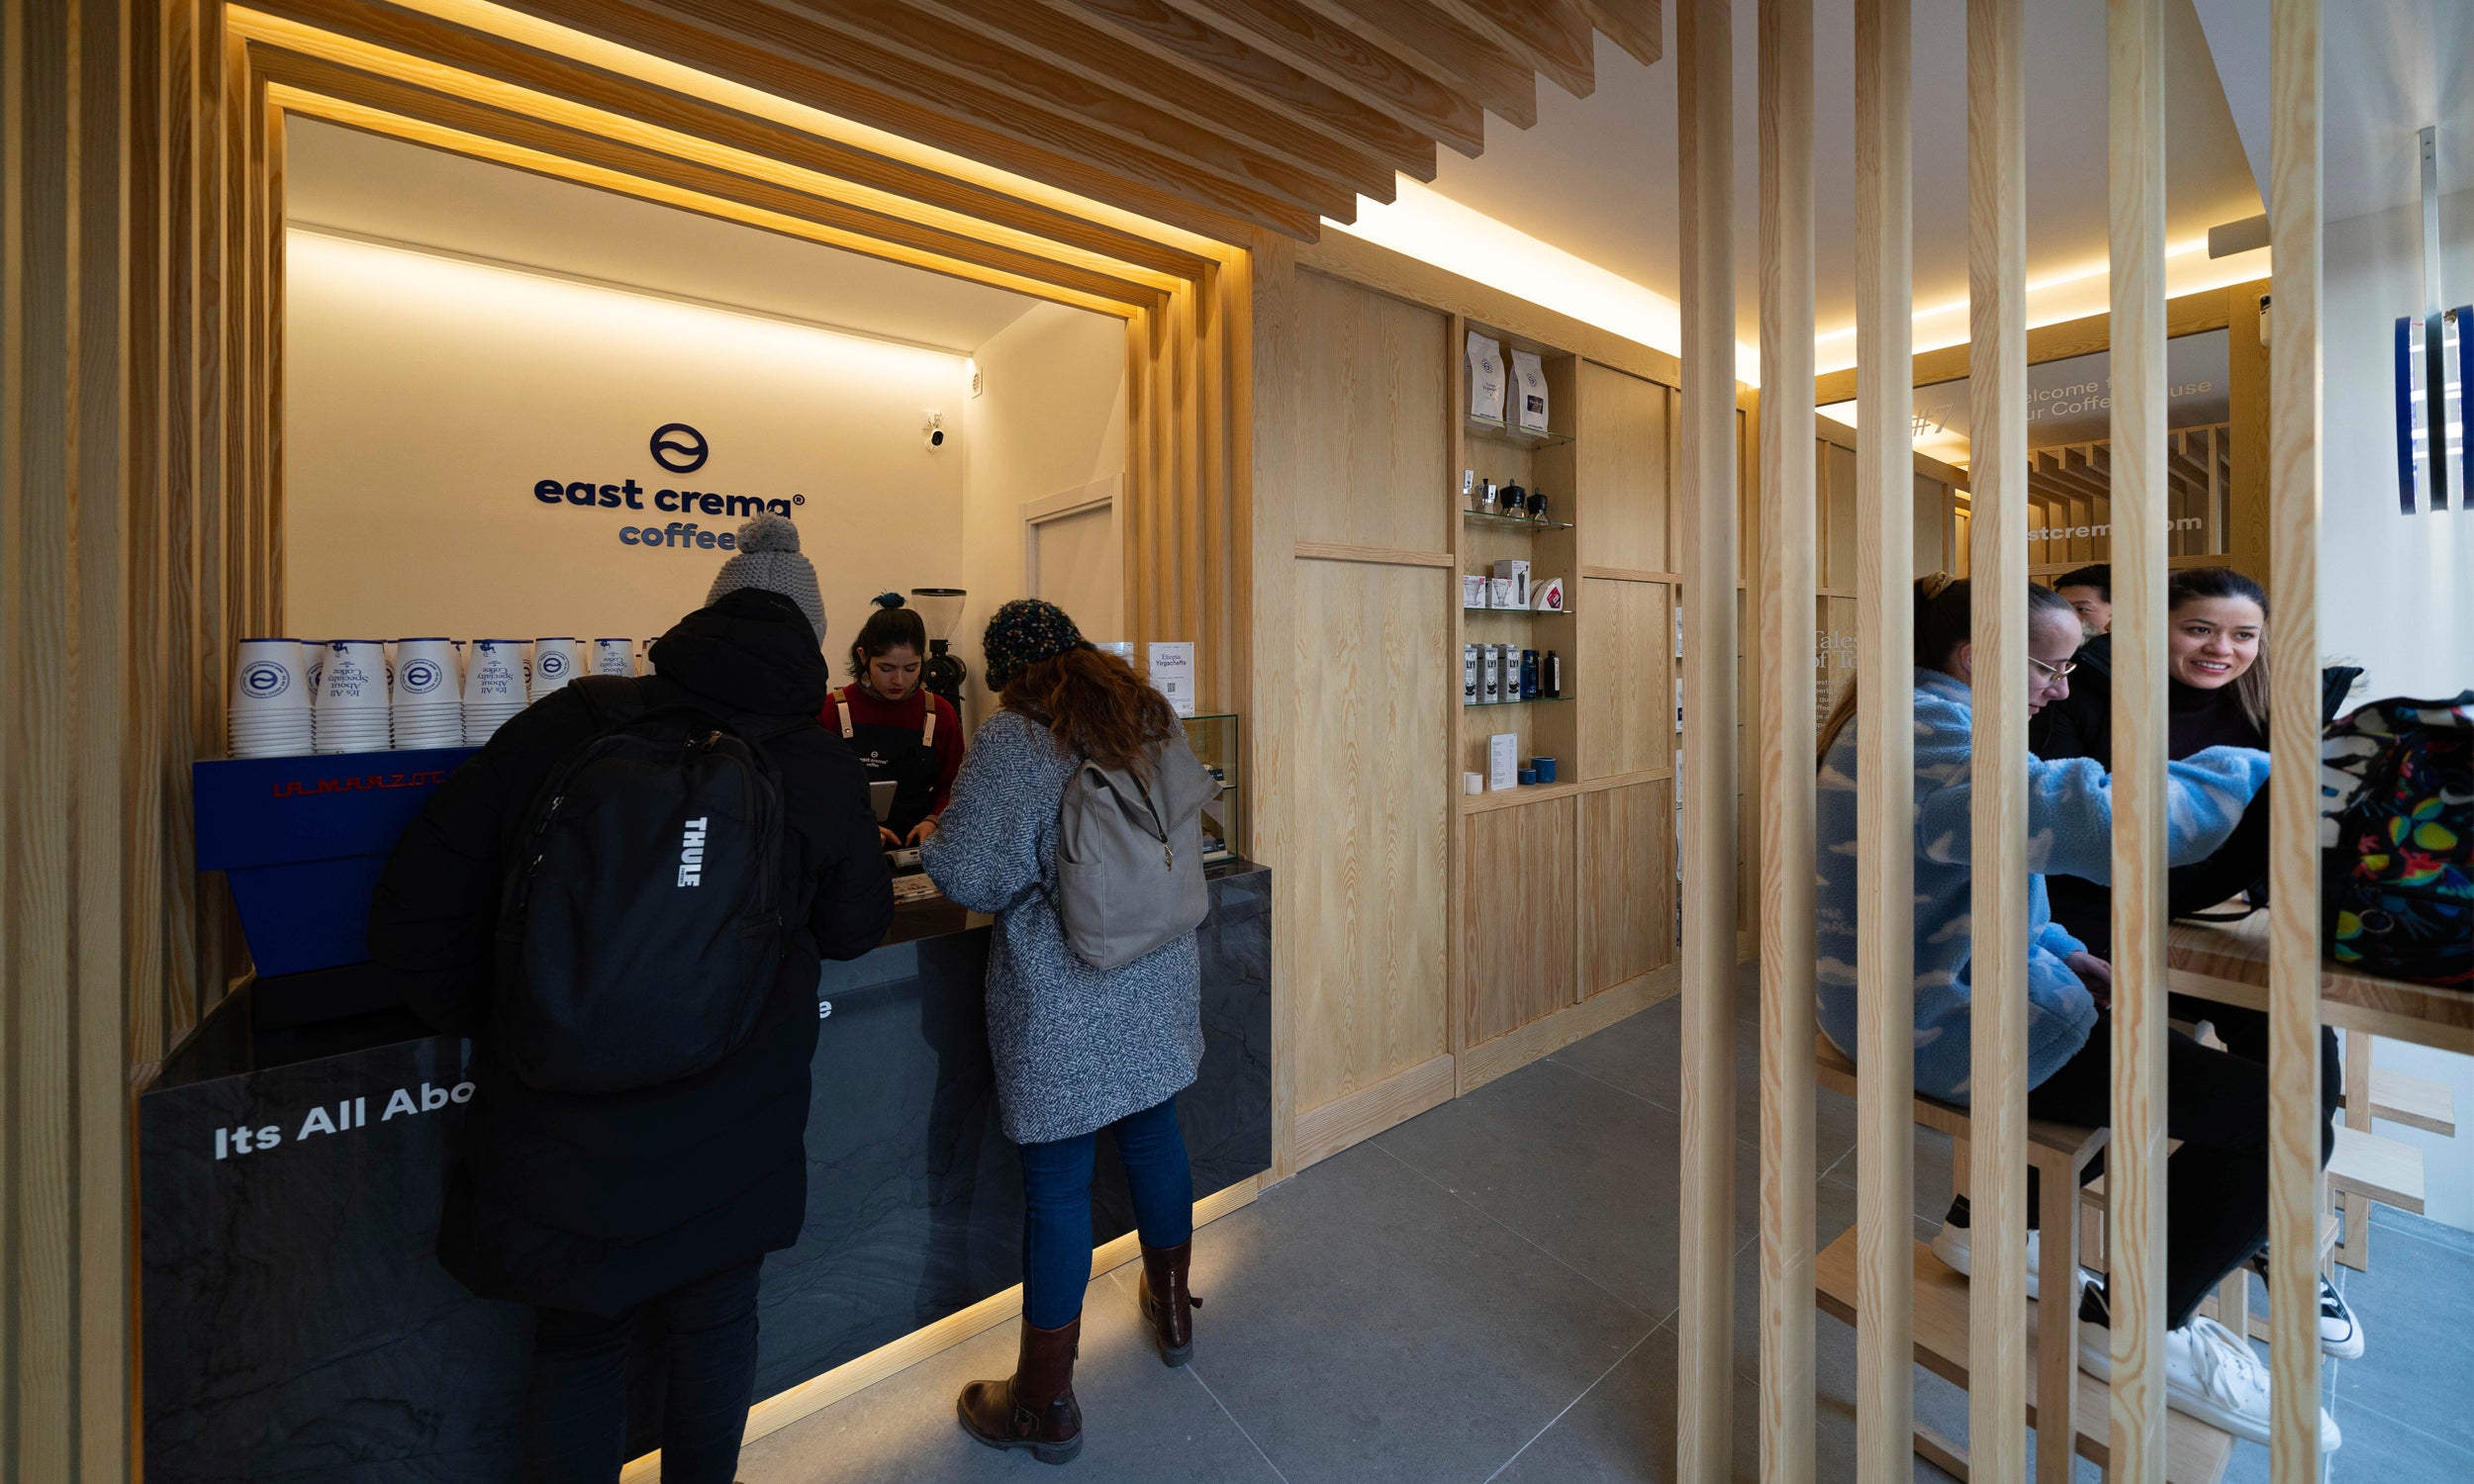 Nuevo Café de Especialidad en Madrid en el barrio de Chamberí